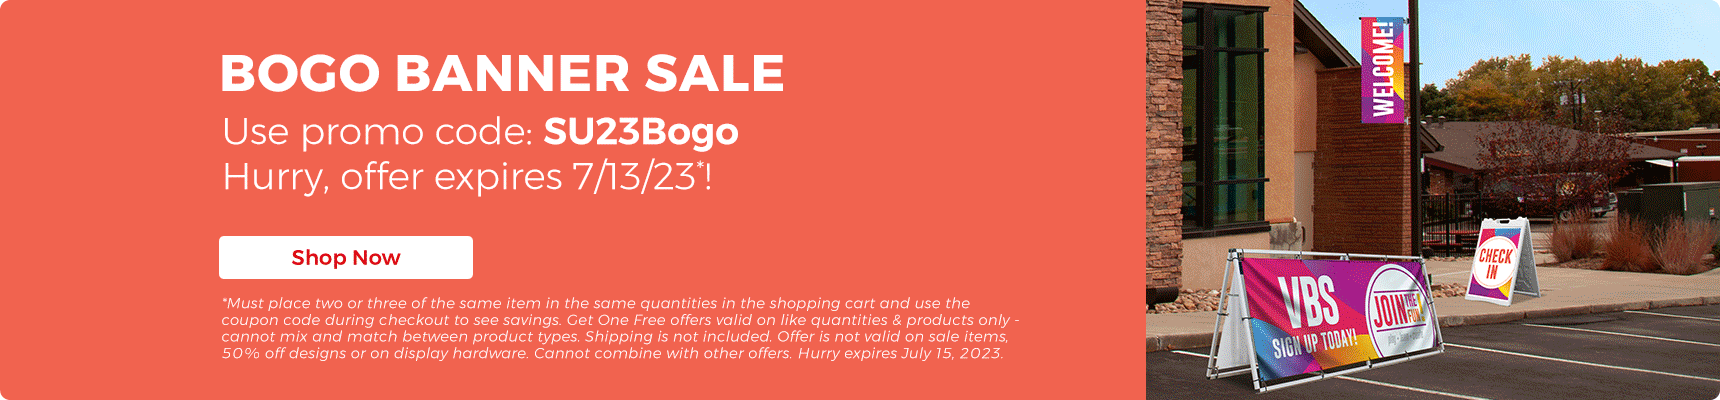 BOGO Banner Sale